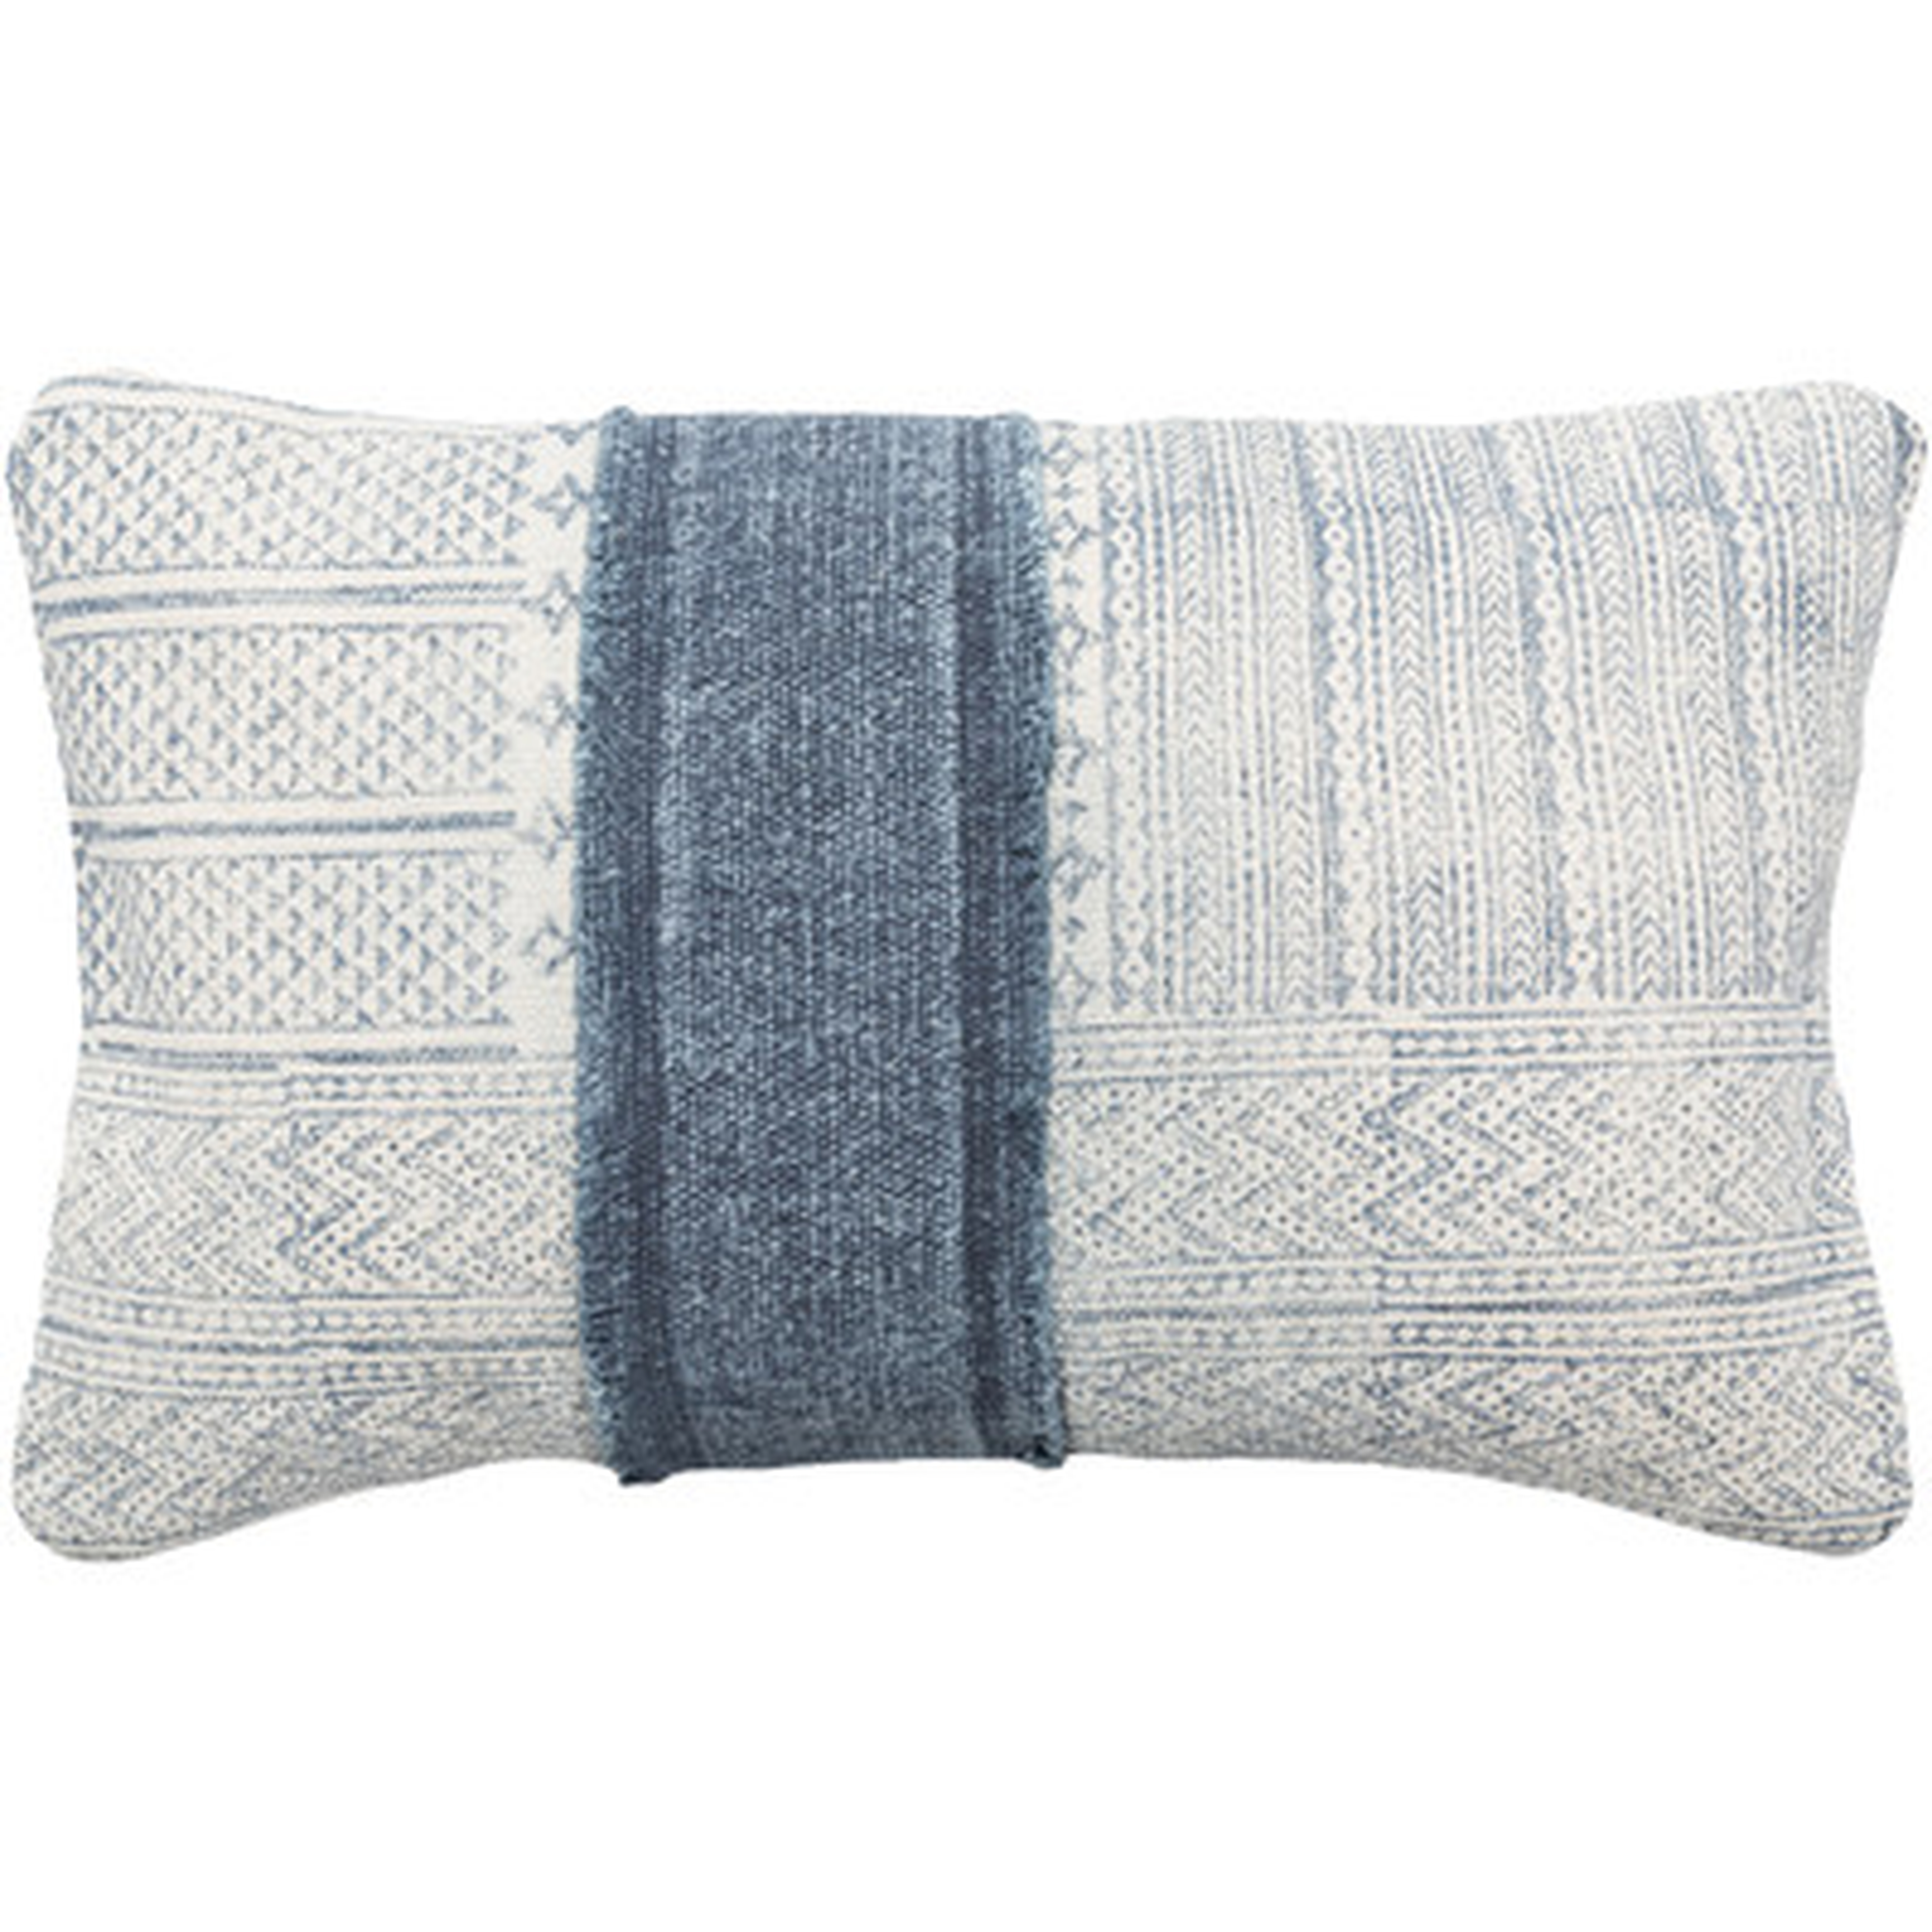 Kyoto Cotton Lumbar Pillow Cover, 22" x 14" - Wayfair